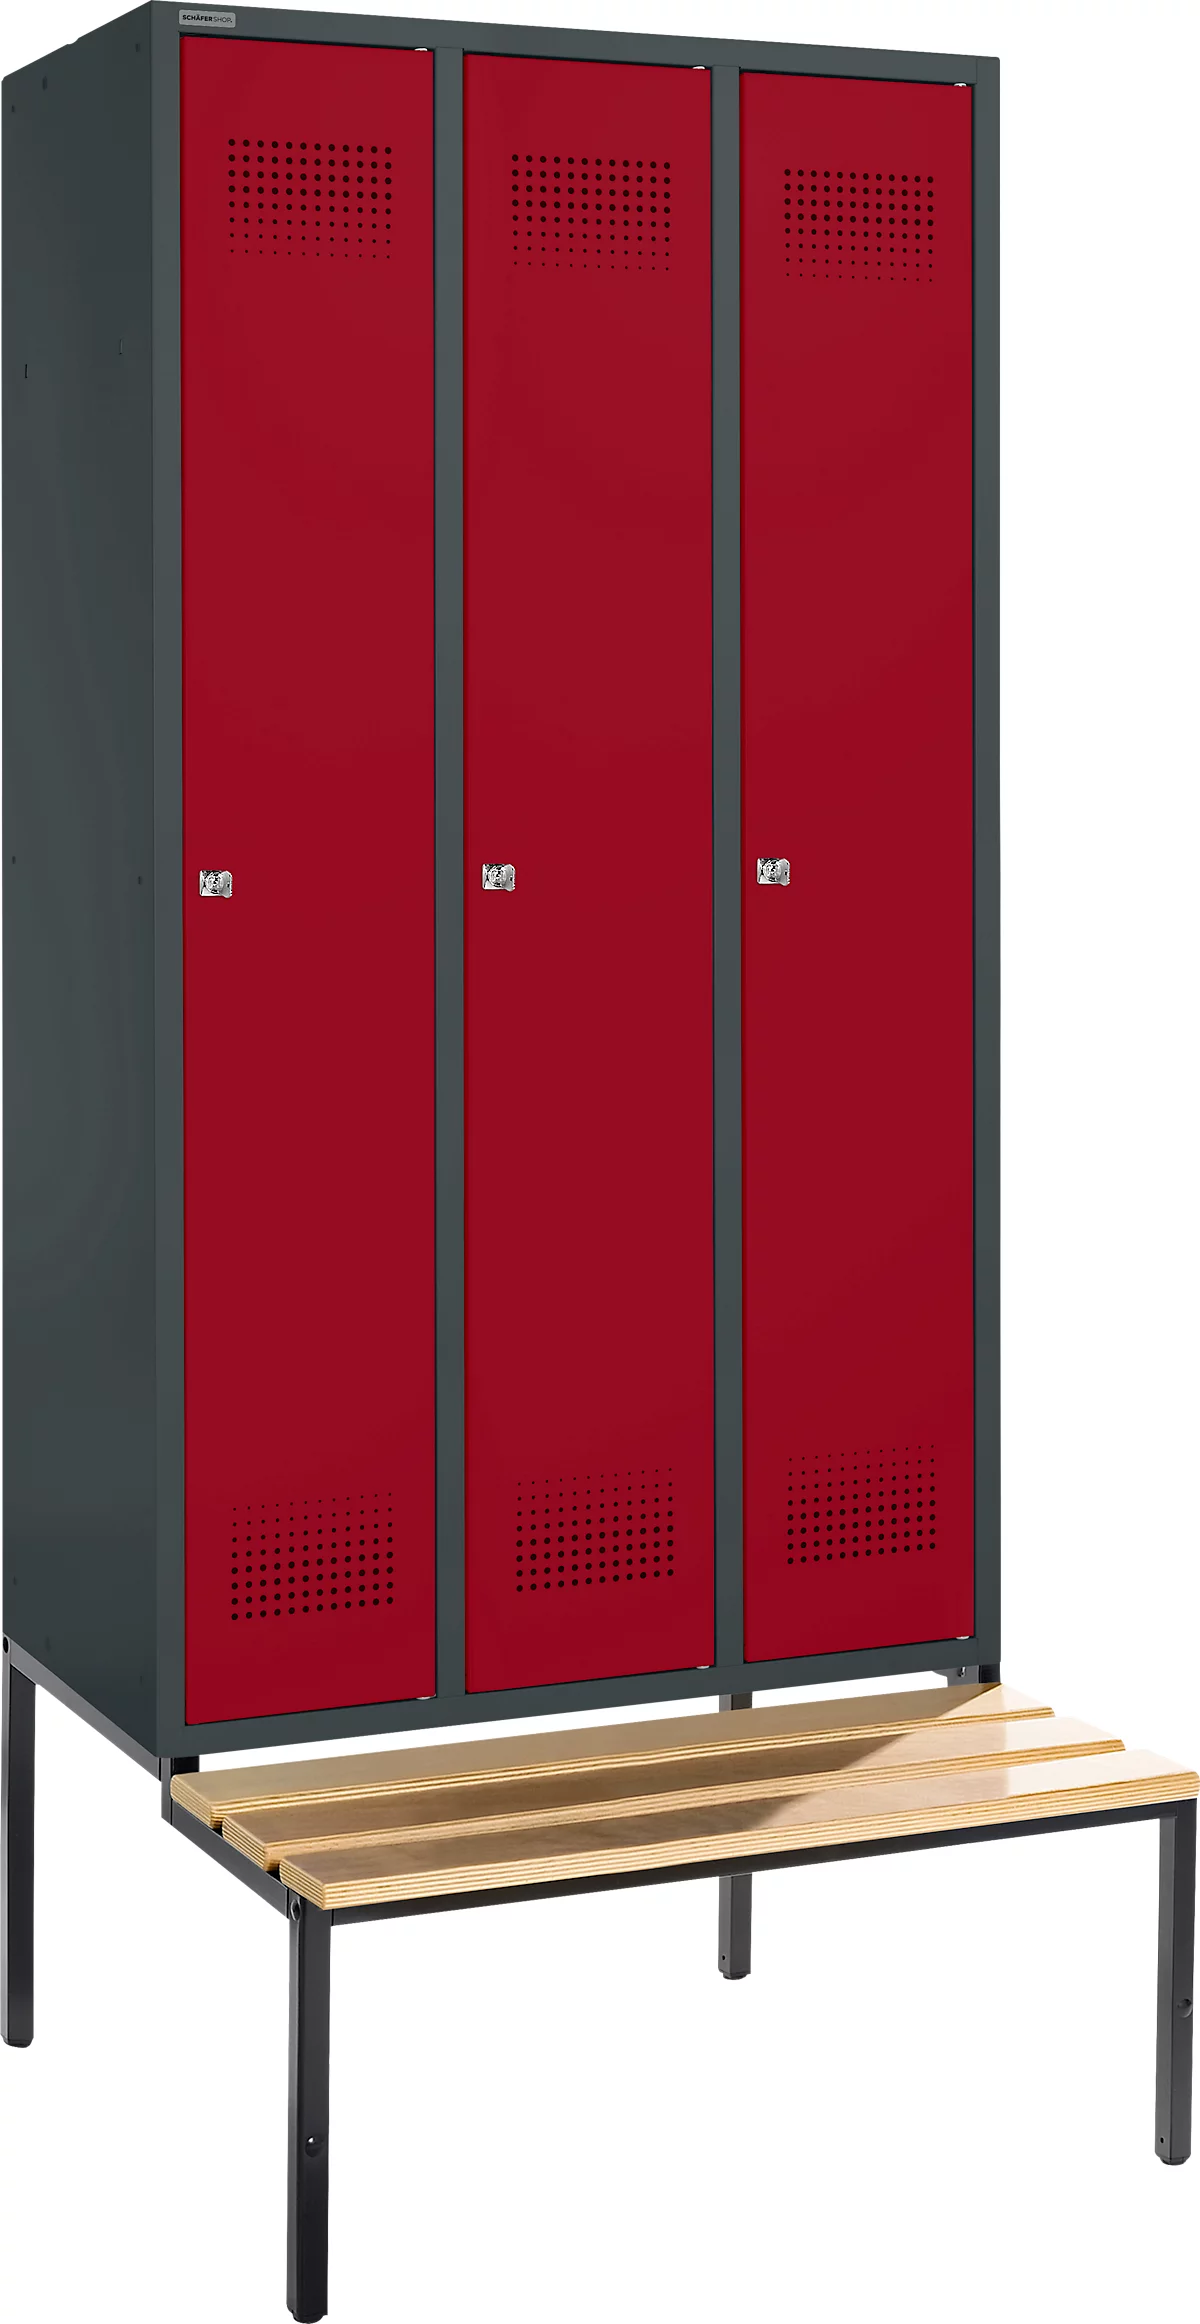 Schäfer Shop Genius Taquilla con banco, 3 compartimentos, anchura compartimento 300 mm, cerradura de cilindro, antracita/rojo rubí